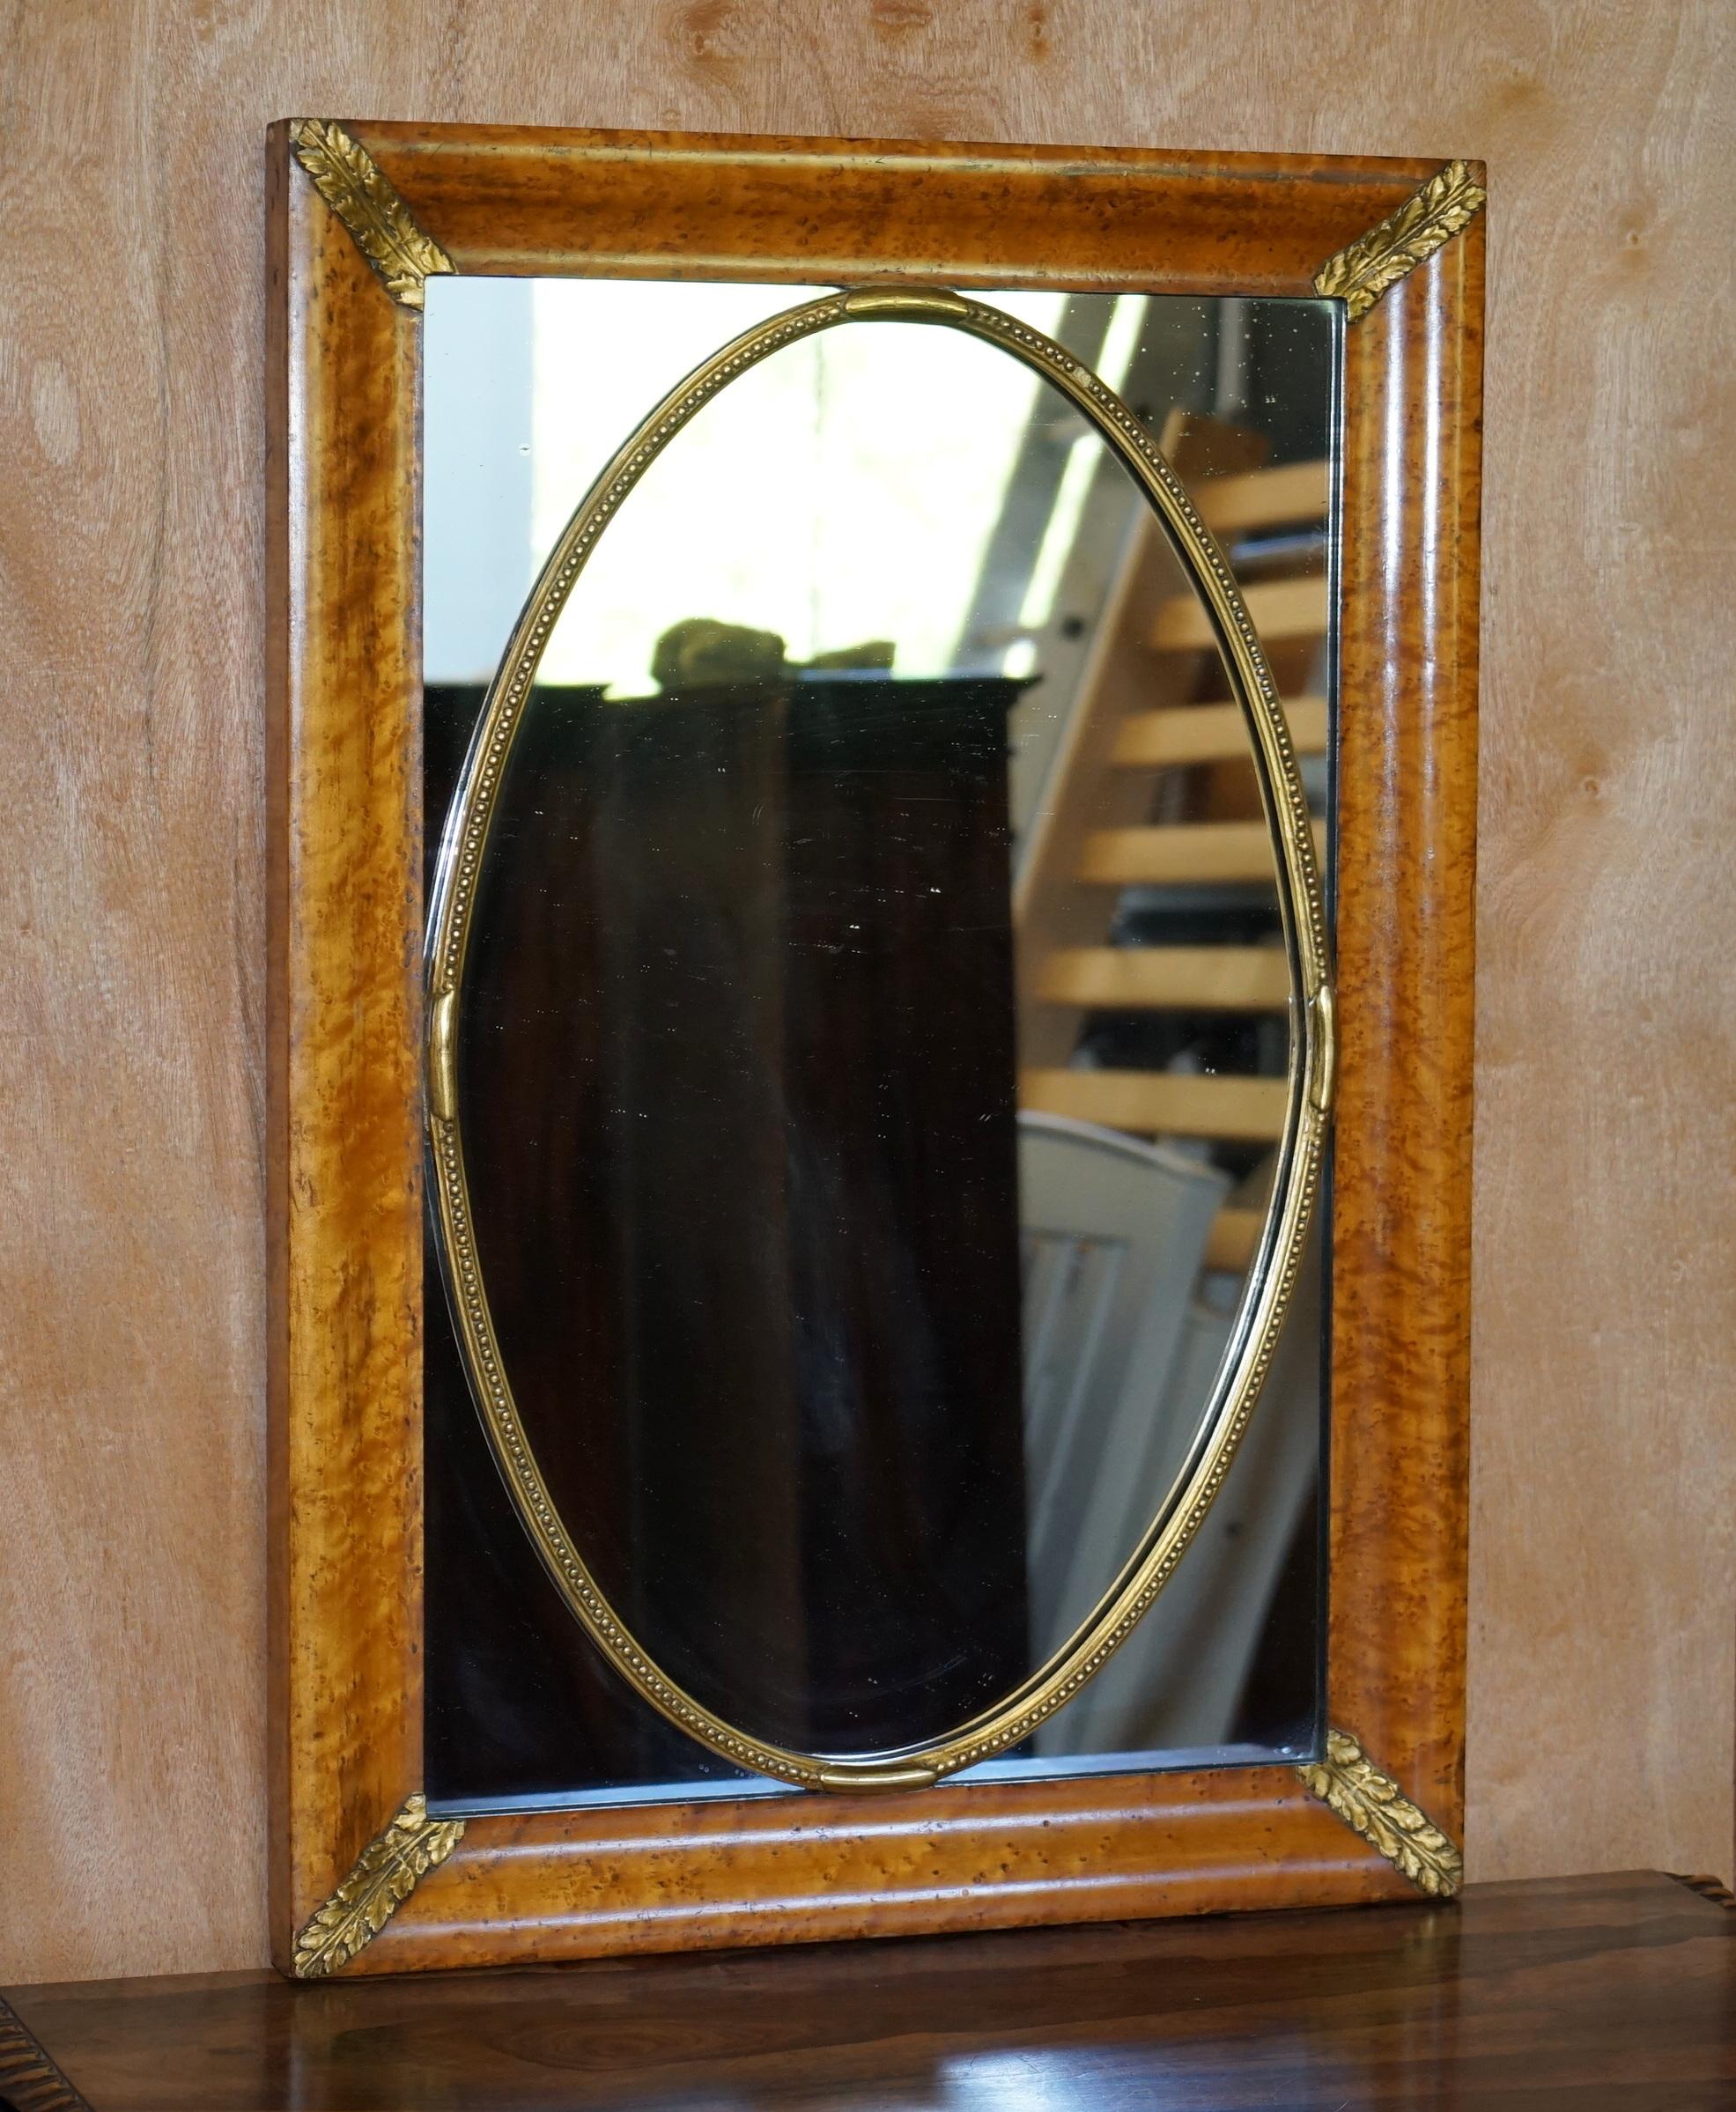 Wir freuen uns, diese atemberaubende Hand gemacht circa 1860 Französisch Gratnuss Wandspiegel mit Blattgold vergoldet Details bieten

Ein sehr dekorativer und schöner französischer Spiegel aus dem 19. Dieses Stück sieht aus jedem Blickwinkel